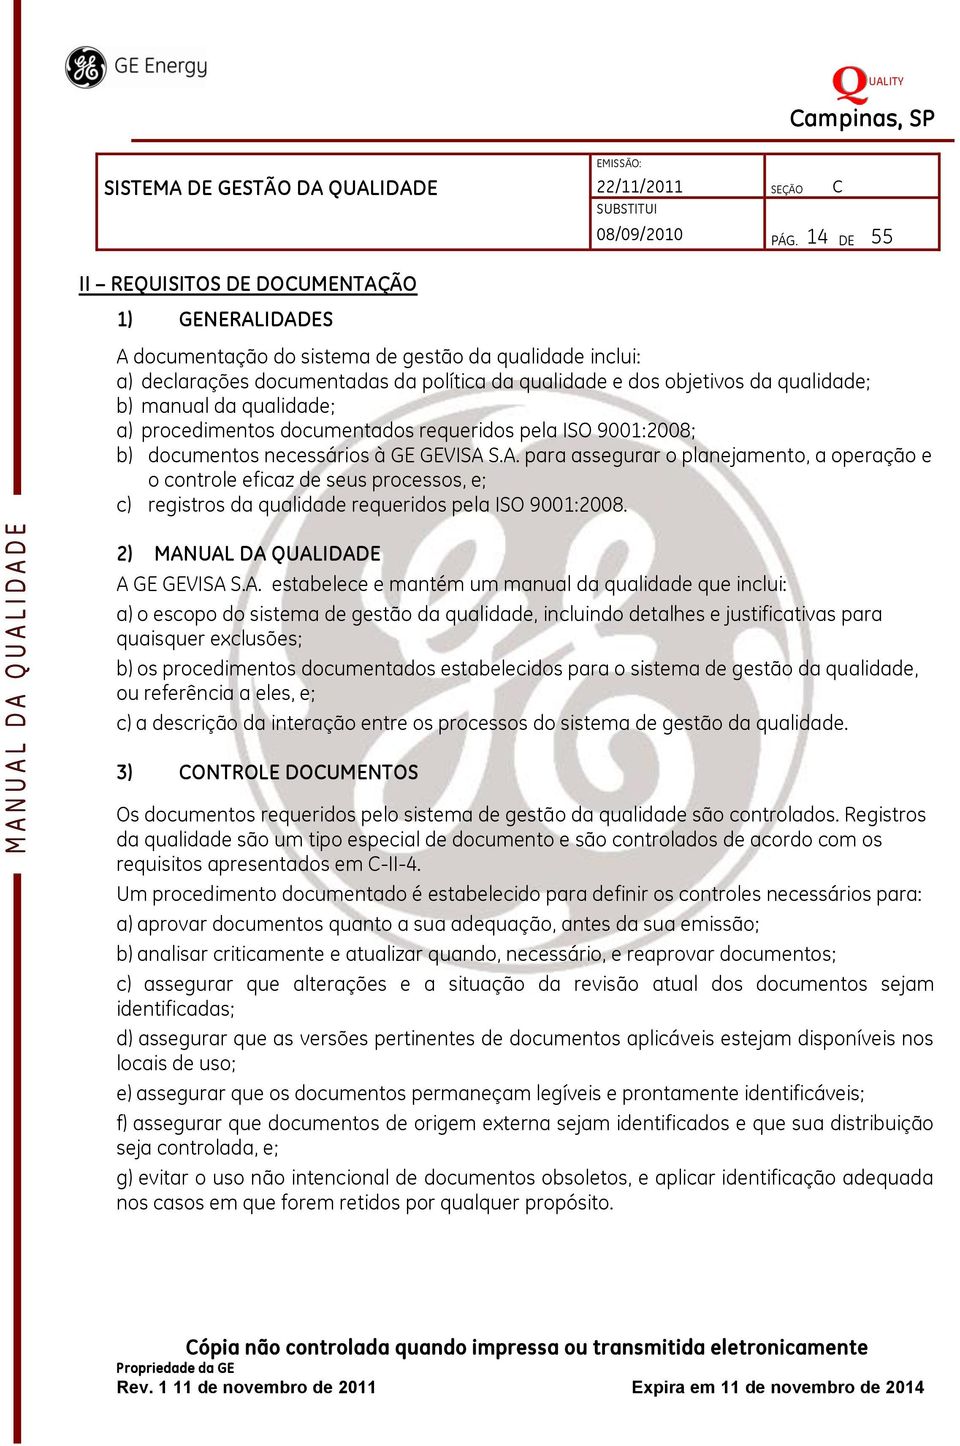 manual da qualidade; a) procedimentos documentados requeridos pela ISO 9001:2008; b) documentos necessários à GE GEVISA 